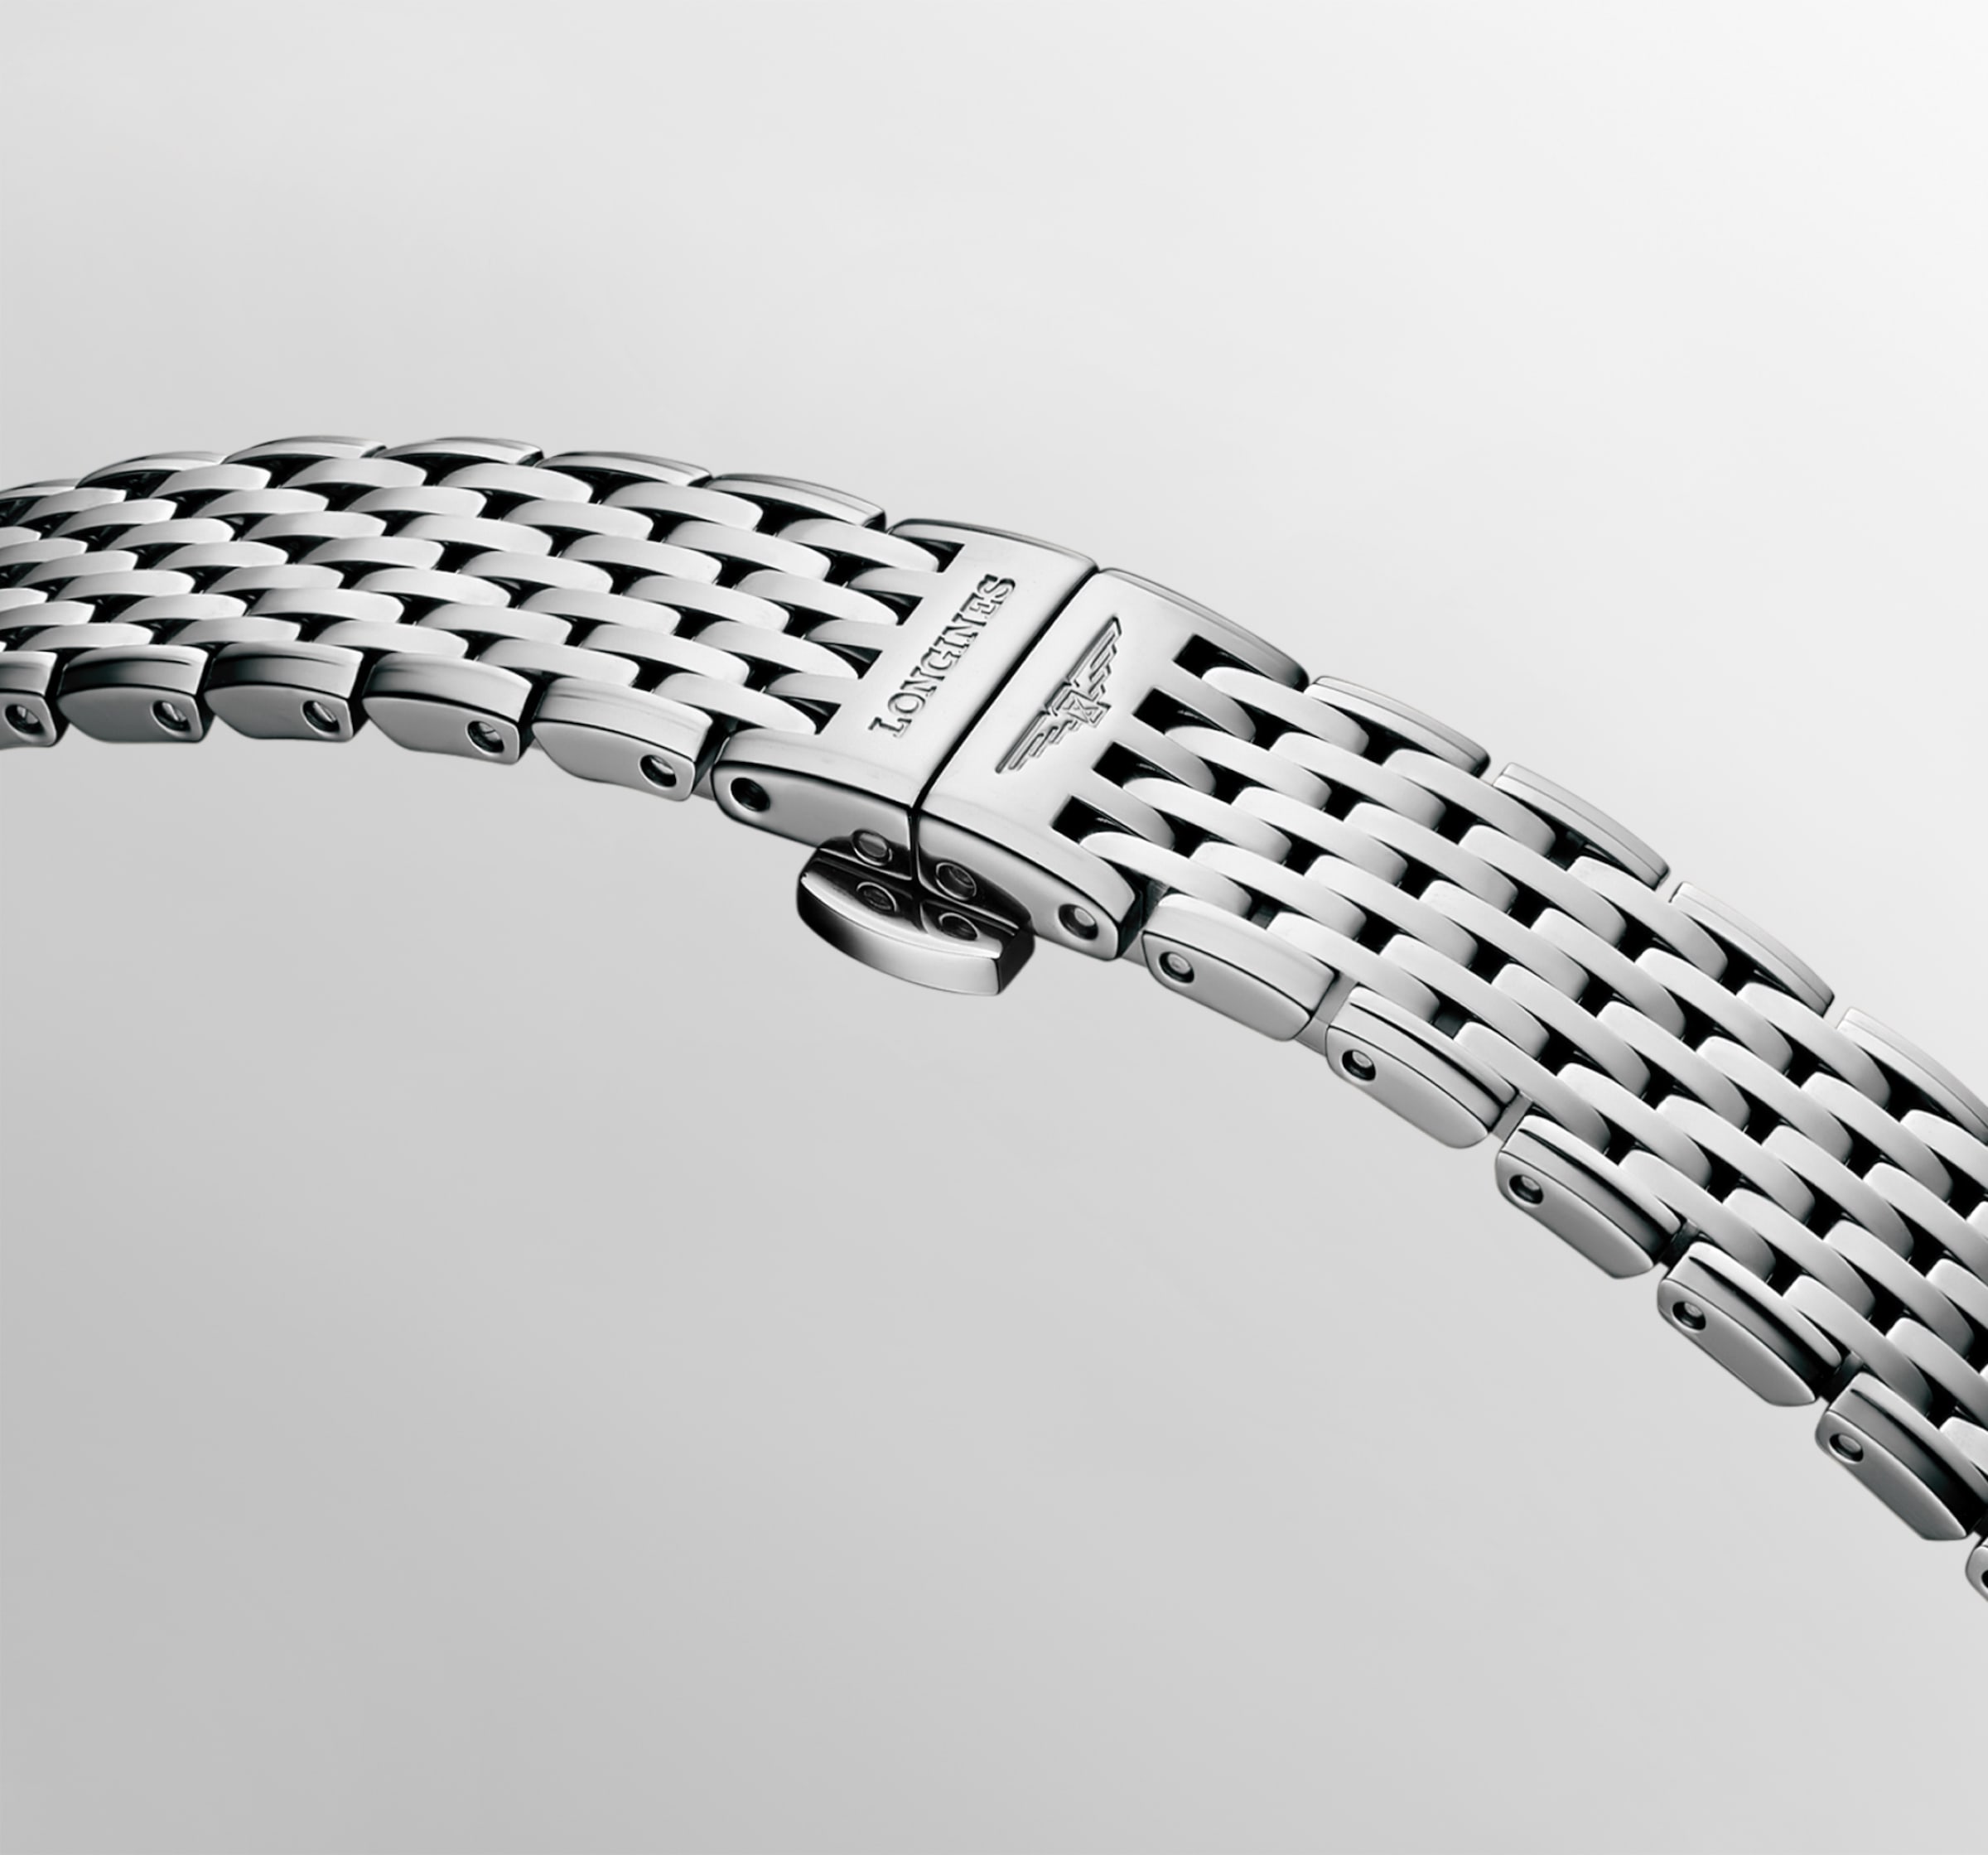 Longines LA GRANDE CLASSIQUE DE LONGINES Quartz Stainless steel Watch - L4.209.4.58.6